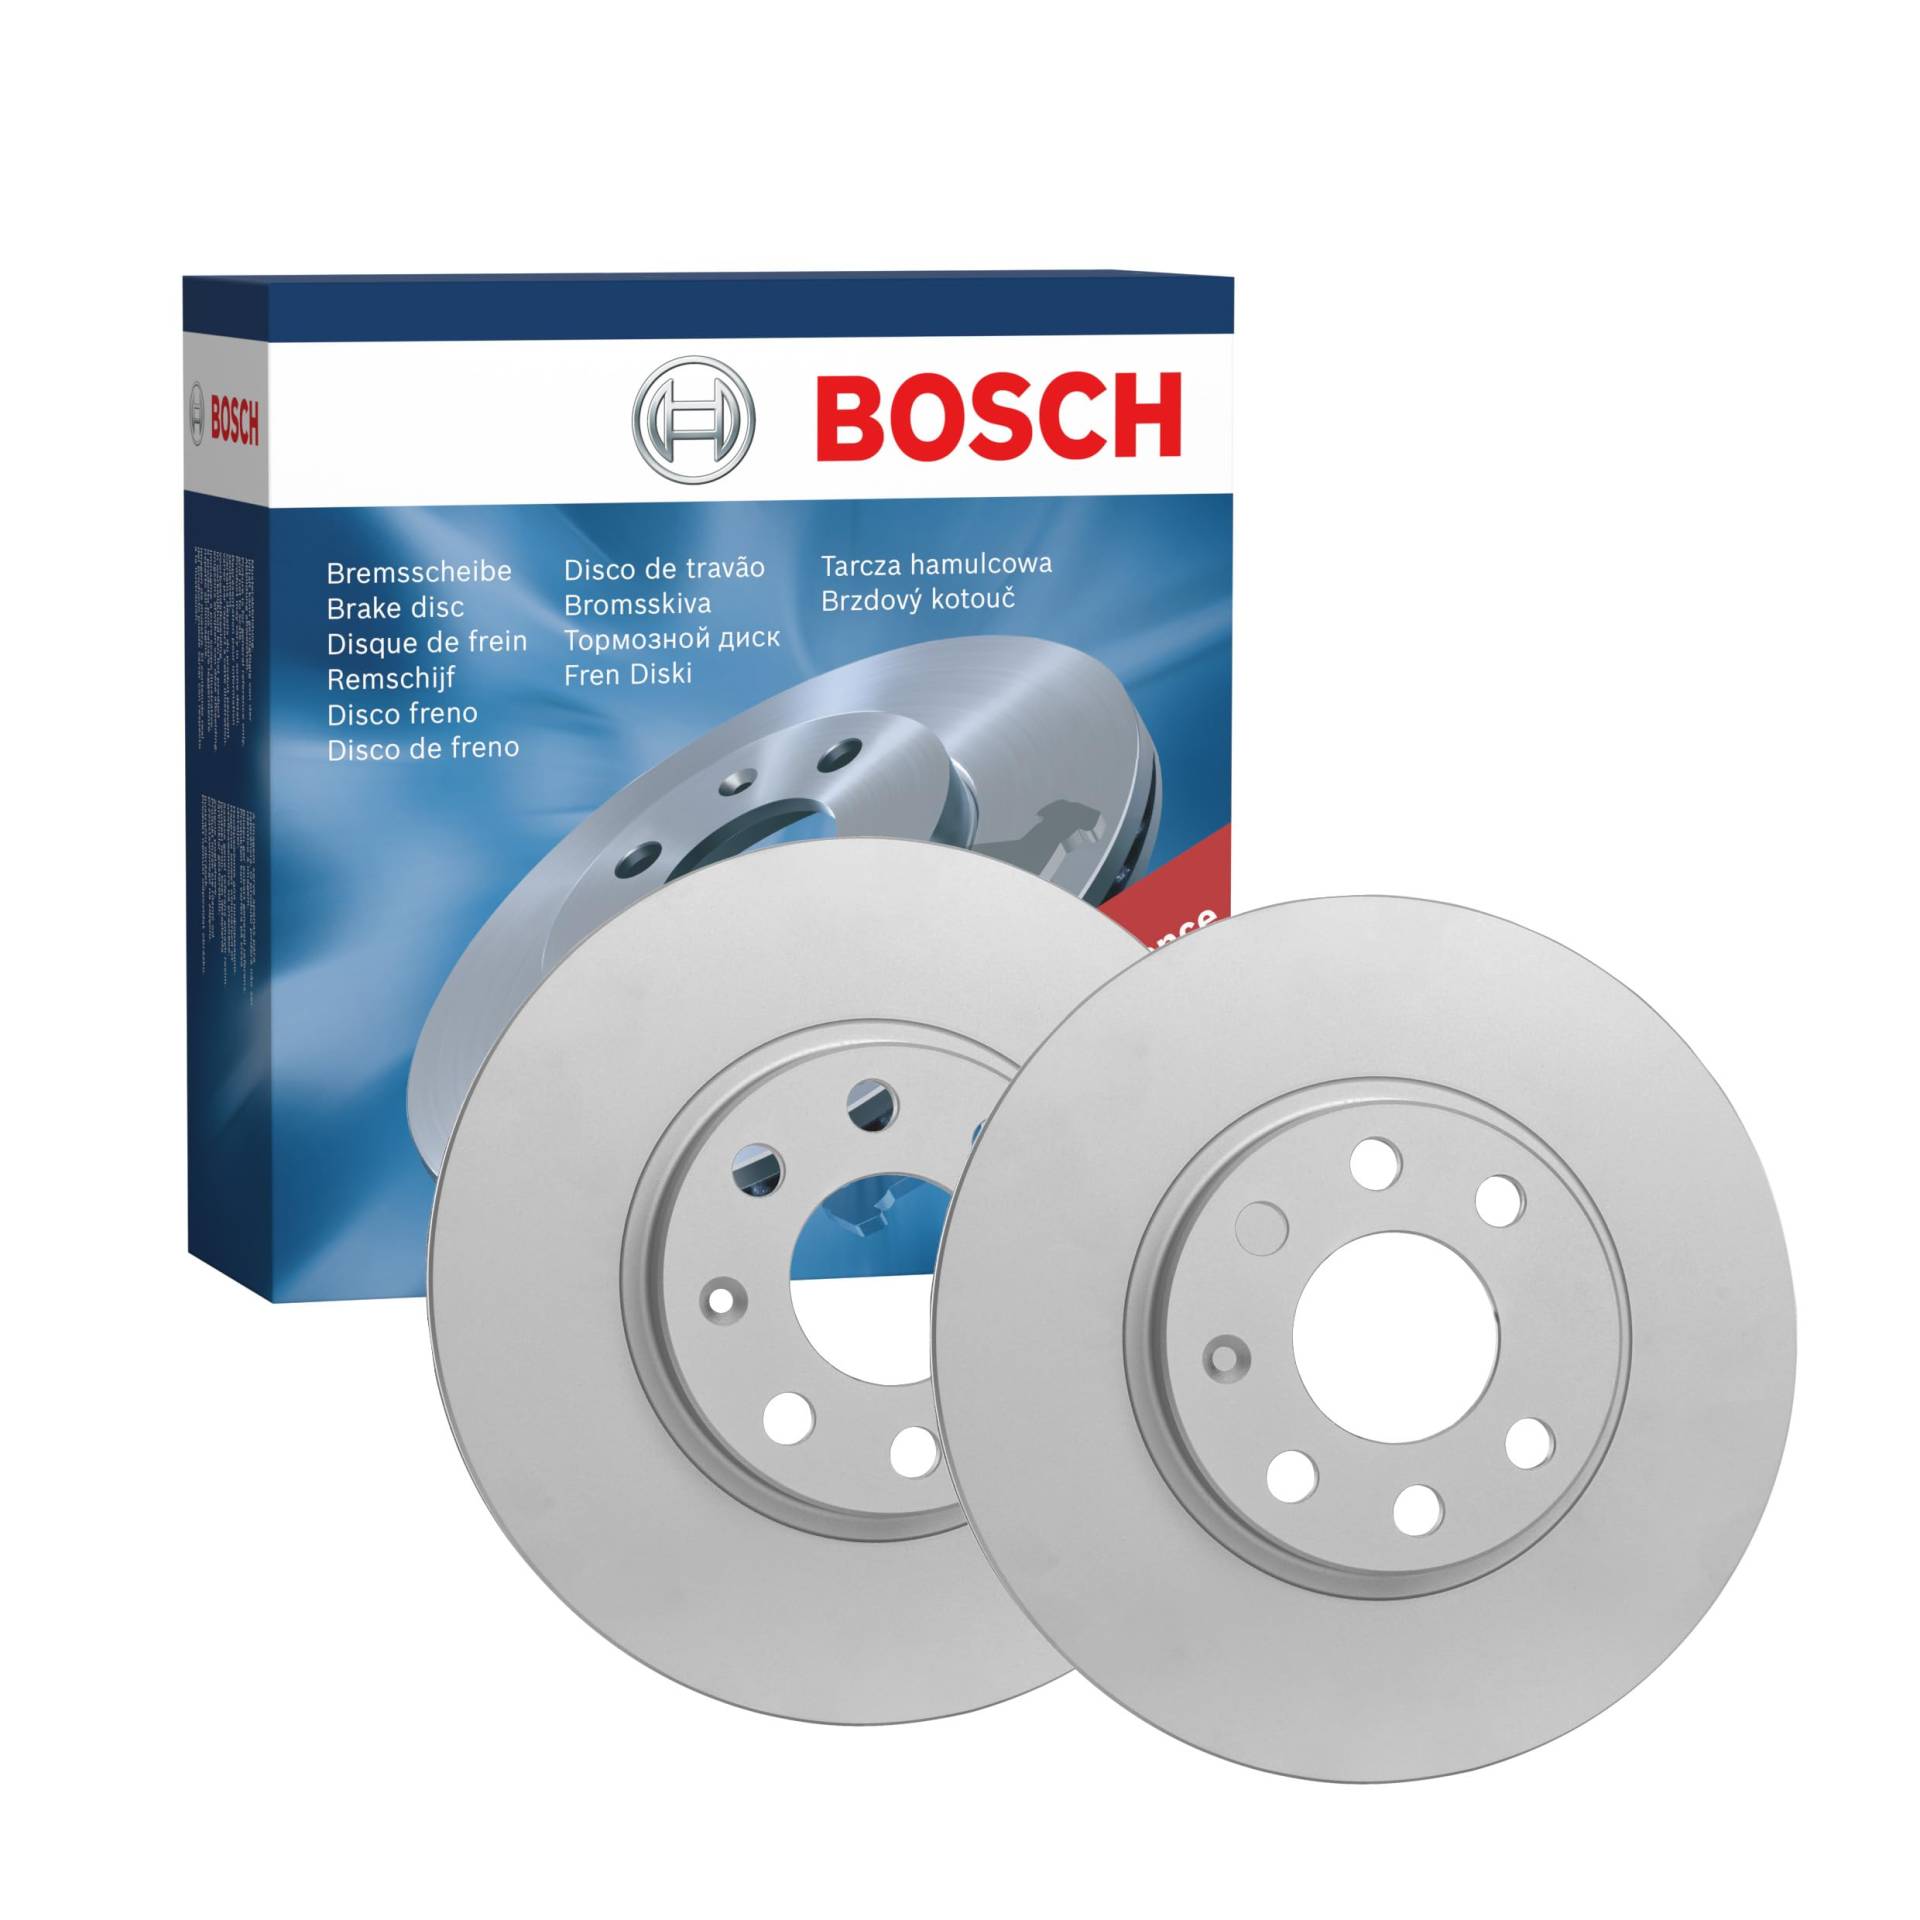 Bosch BD2047 Bremsscheiben - Vorderachse - ECE-R90 Zertifizierung - zwei Bremsscheiben pro Set von Bosch Automotive